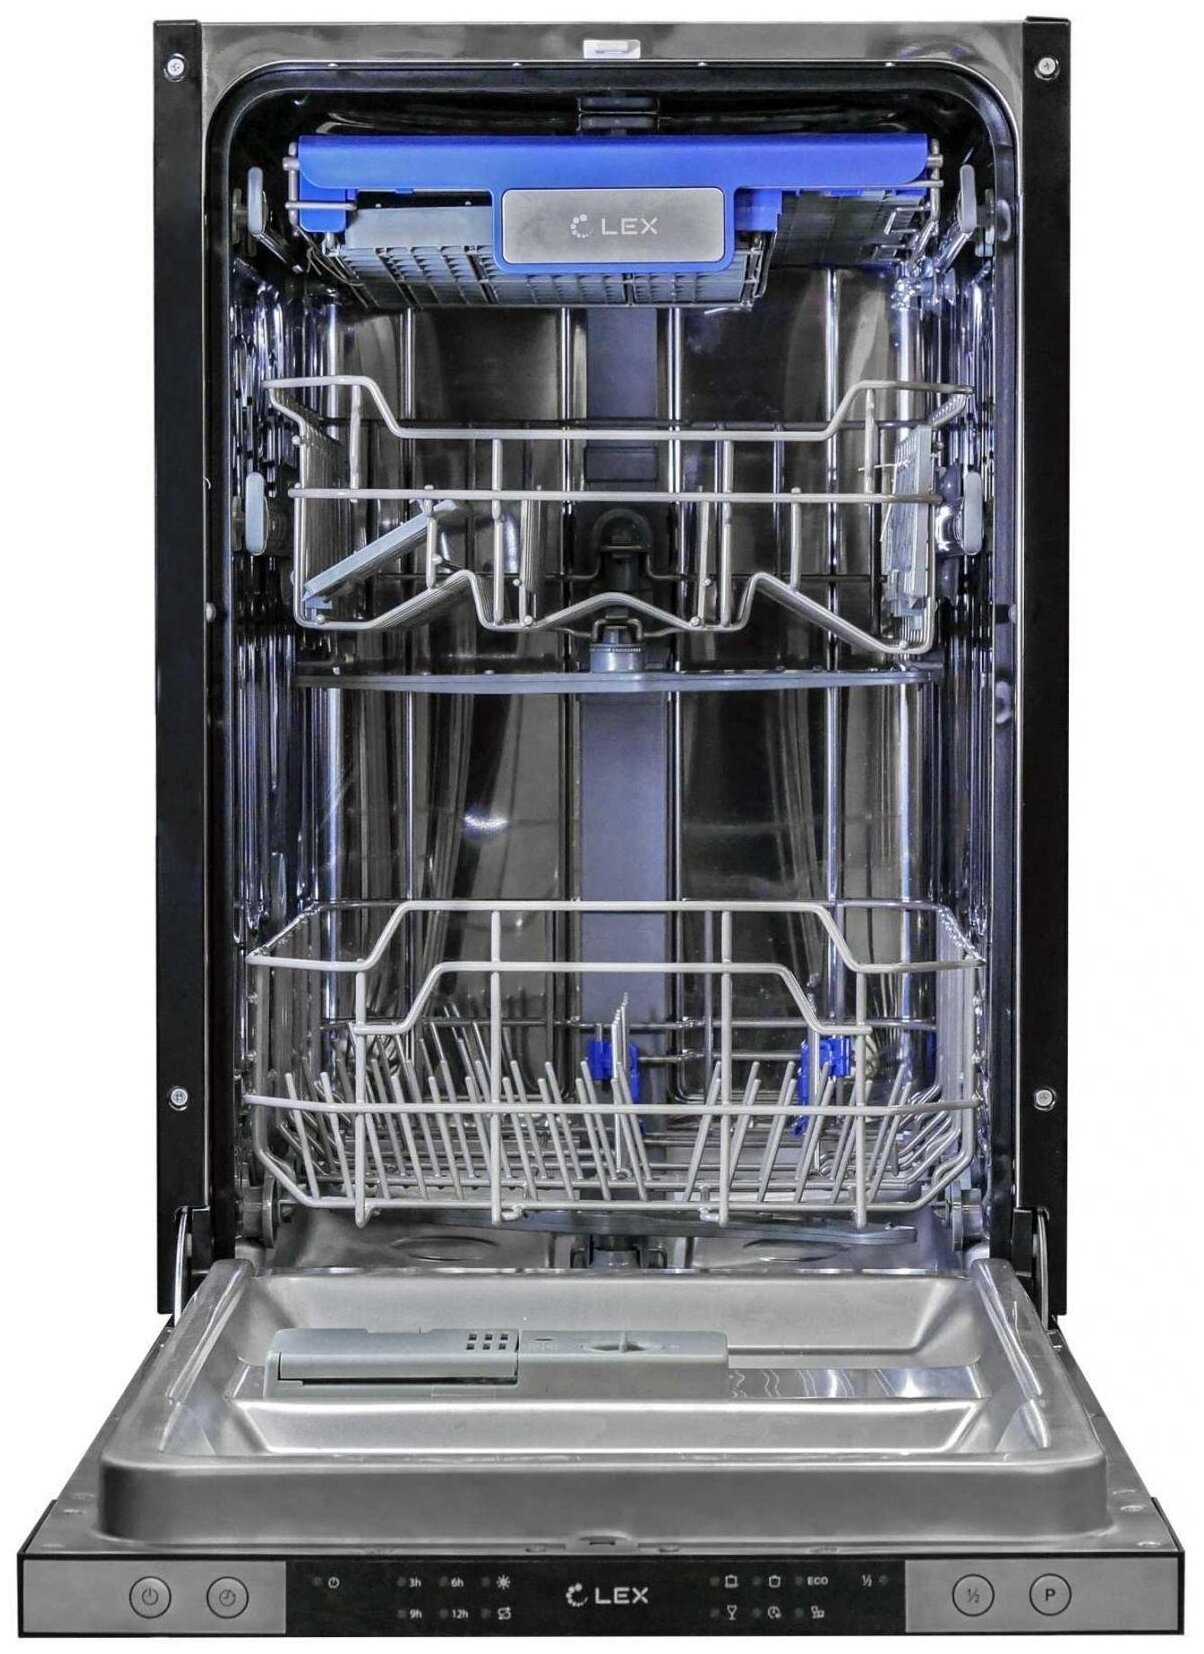 Встроенная посудомойка 45 рейтинг. Встраиваемая посудомоечная машина Lex PM 4563 B. Посудомоечная машина Lex PM 4563 A. Встраиваемая посудомоечная машина Ginzzu dc508. Посудомоечная машина Lex PM 4563 размер.